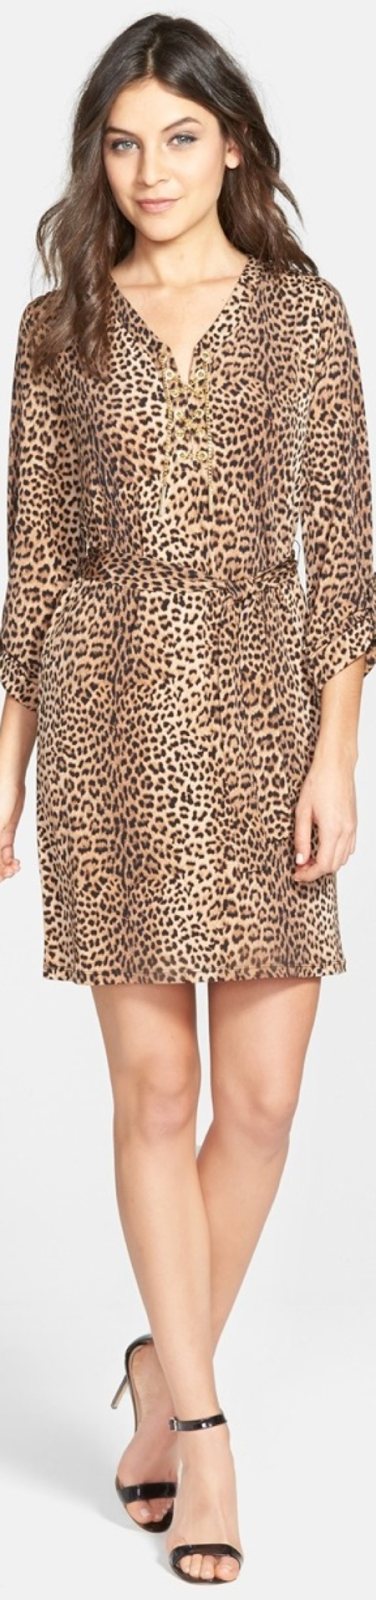 Michael Kors Leopard Print Chain Lace-Up Dress